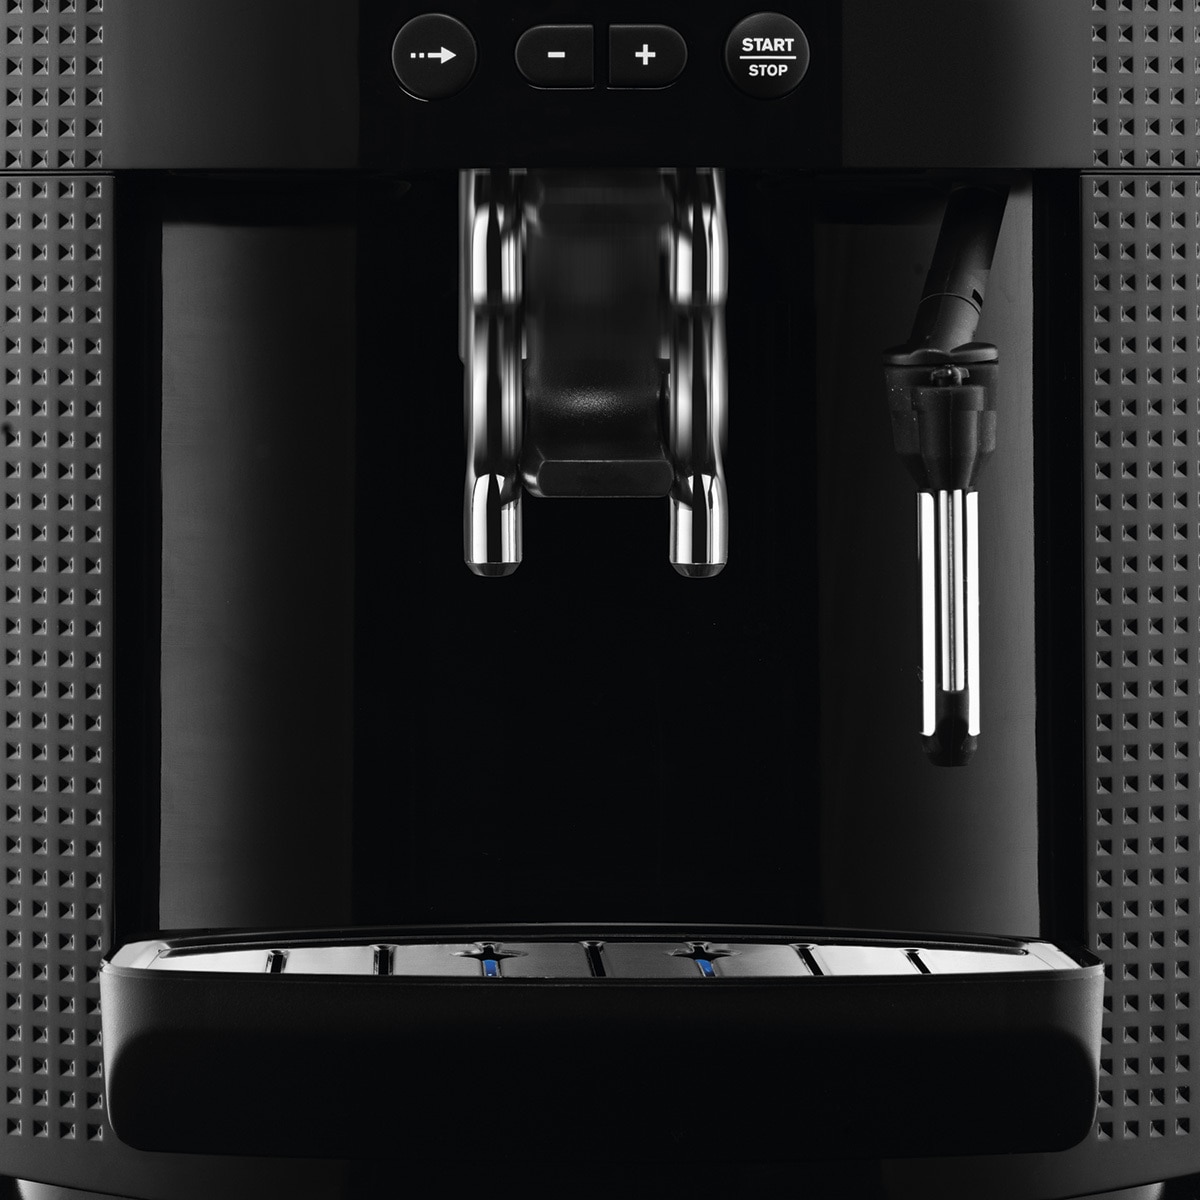 Cafetera superautomática Essential Quattro Force Digital de Krups